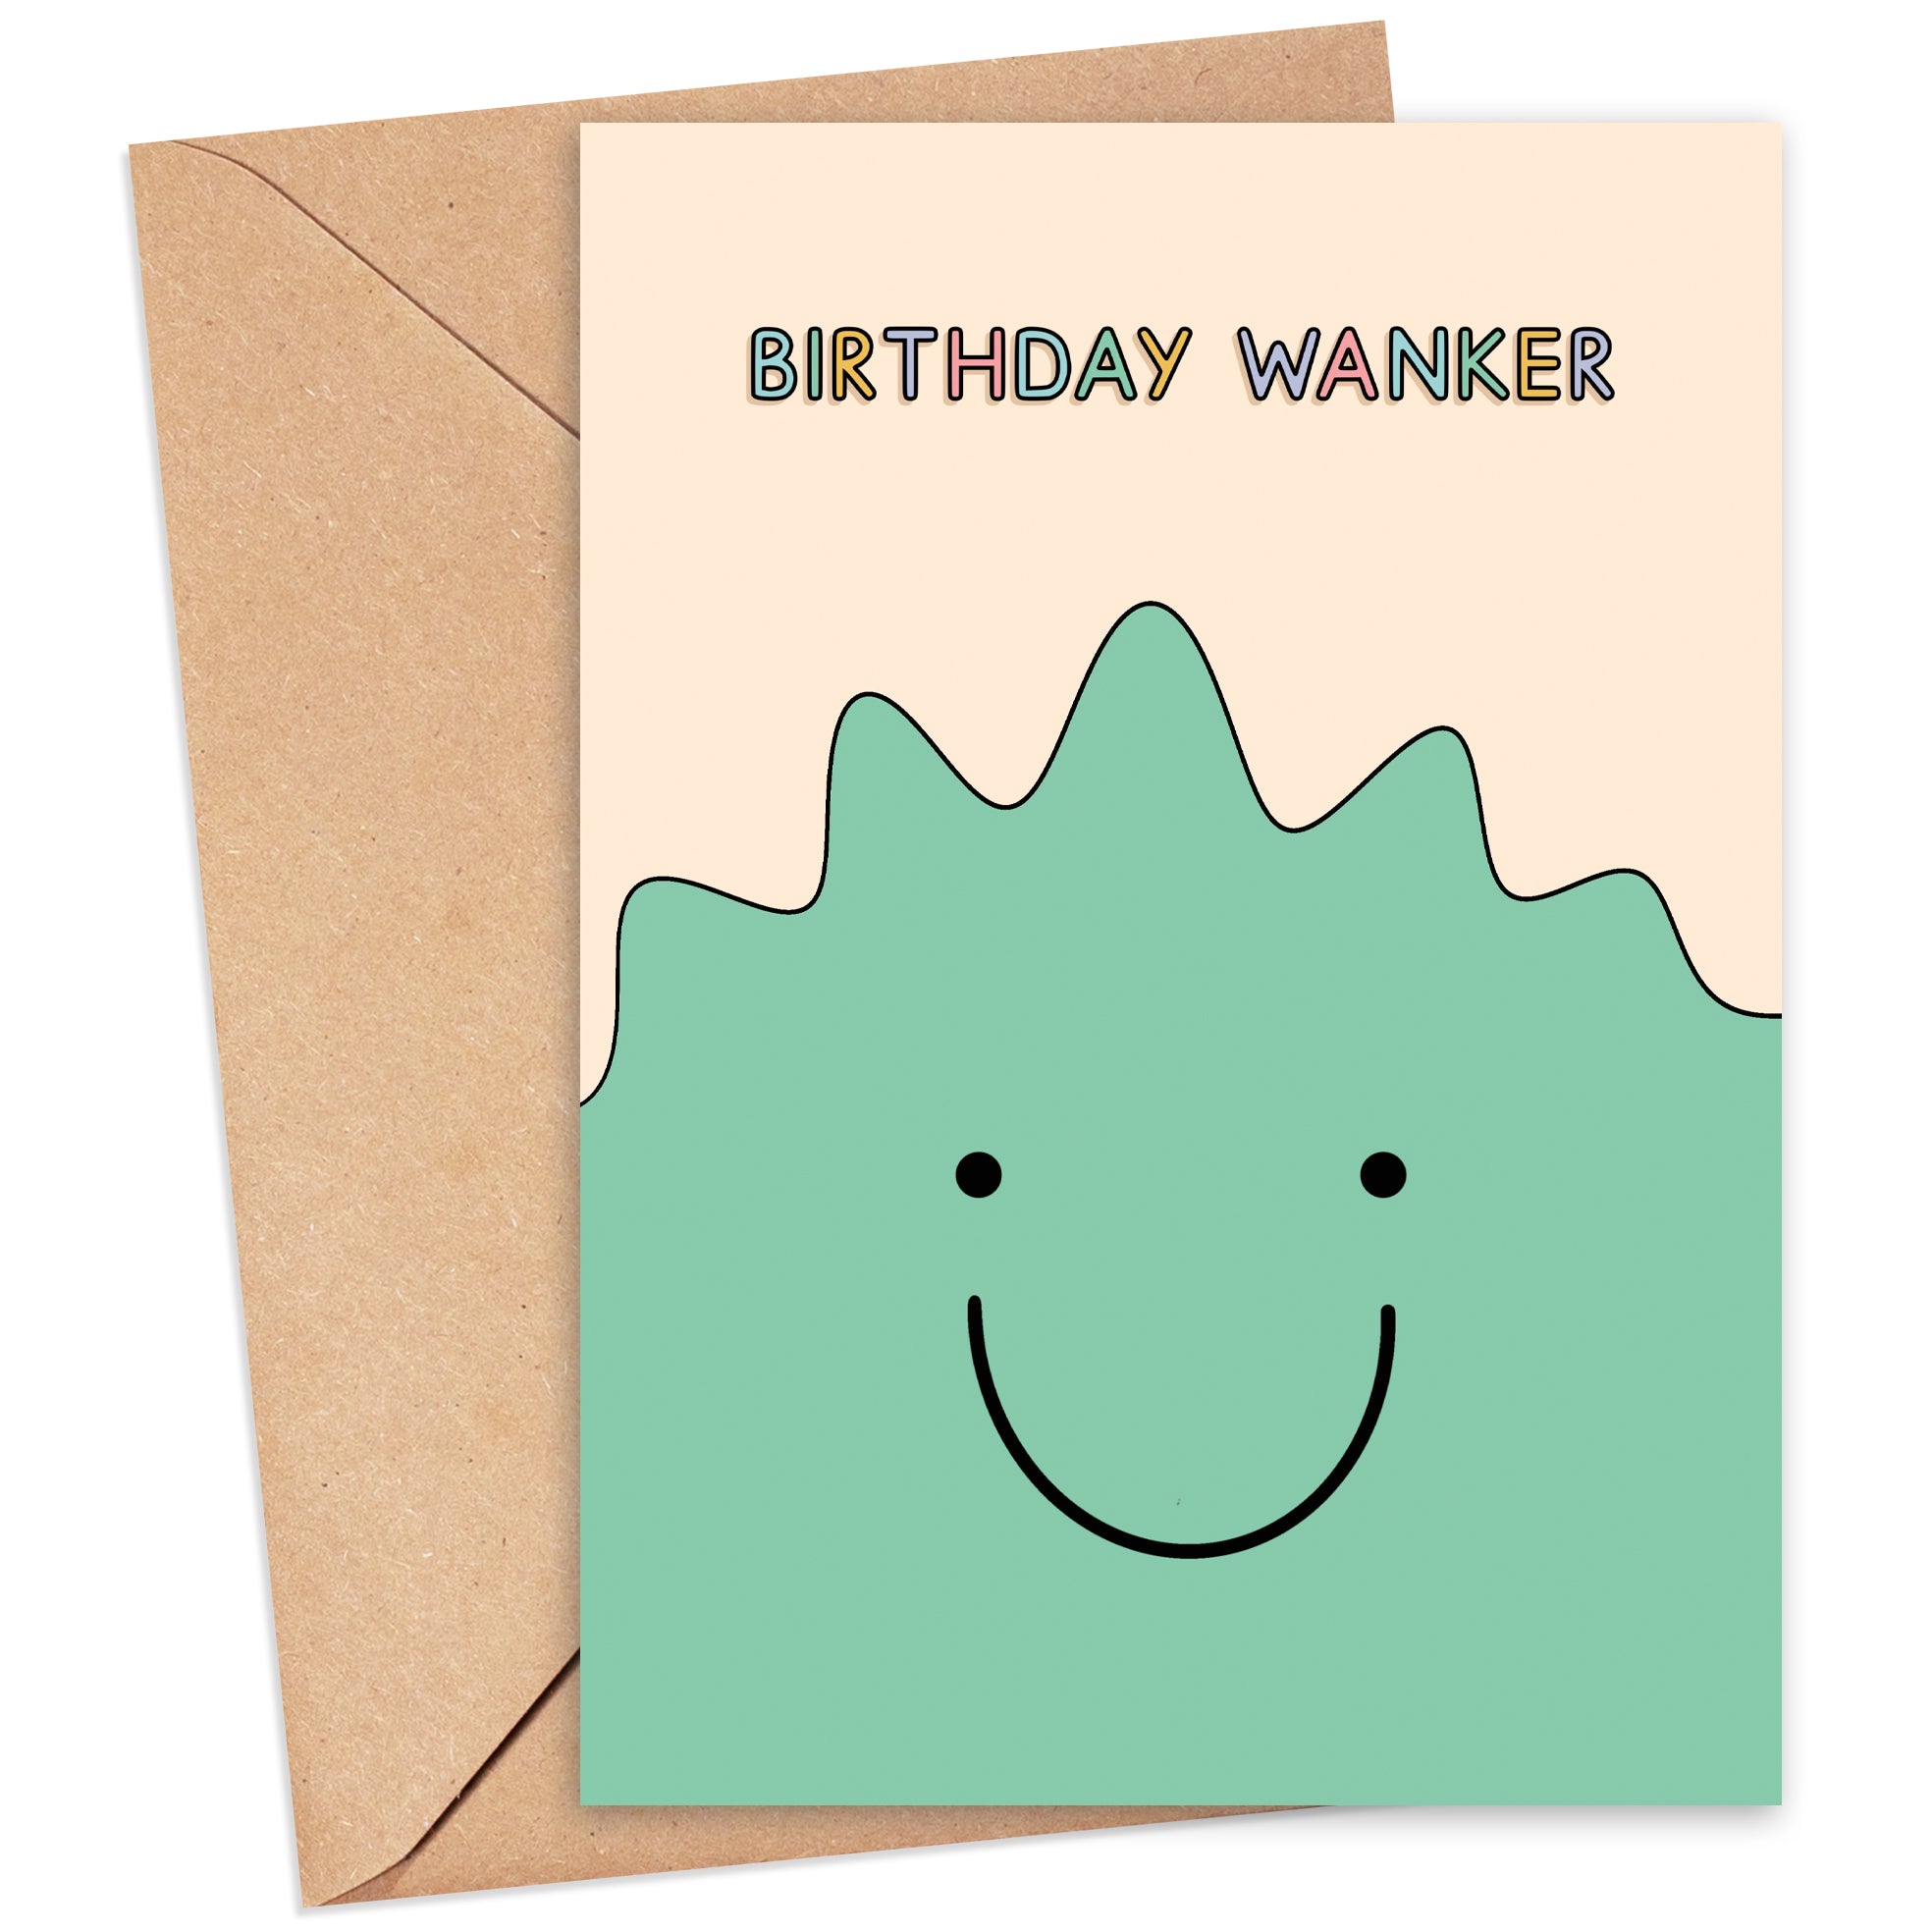 Birthday Wanker Monster Card